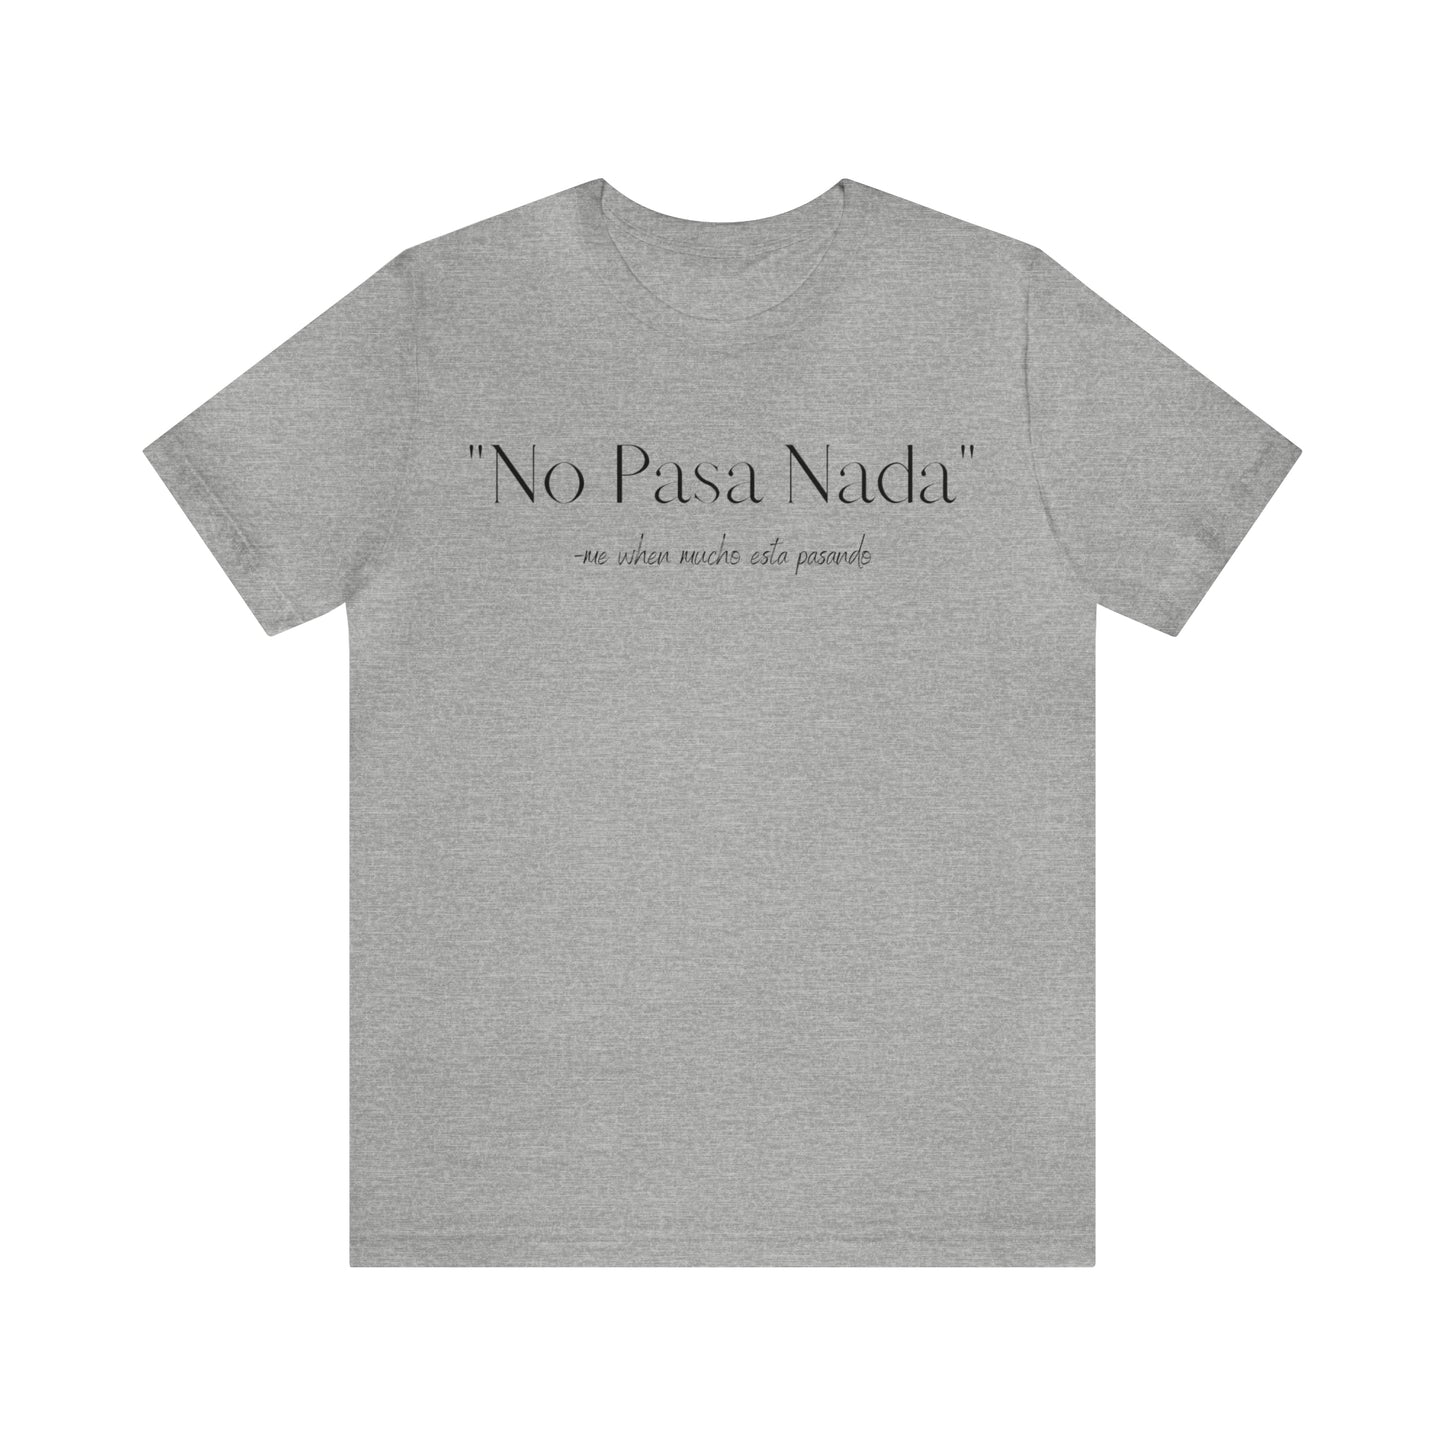 No Pasa Nada, Shirt